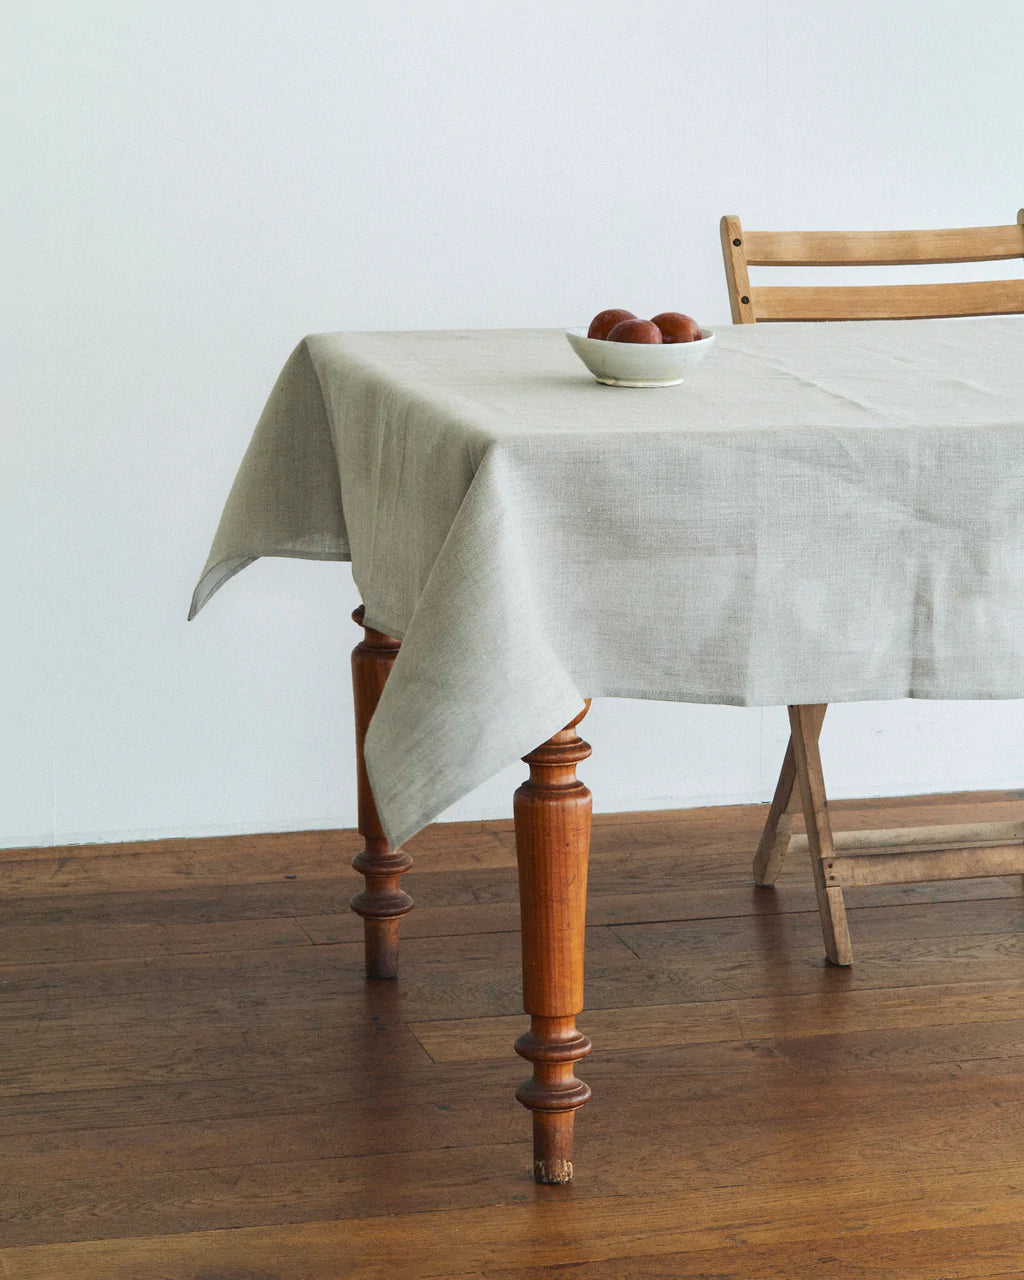 Linen Tablecloth Natural